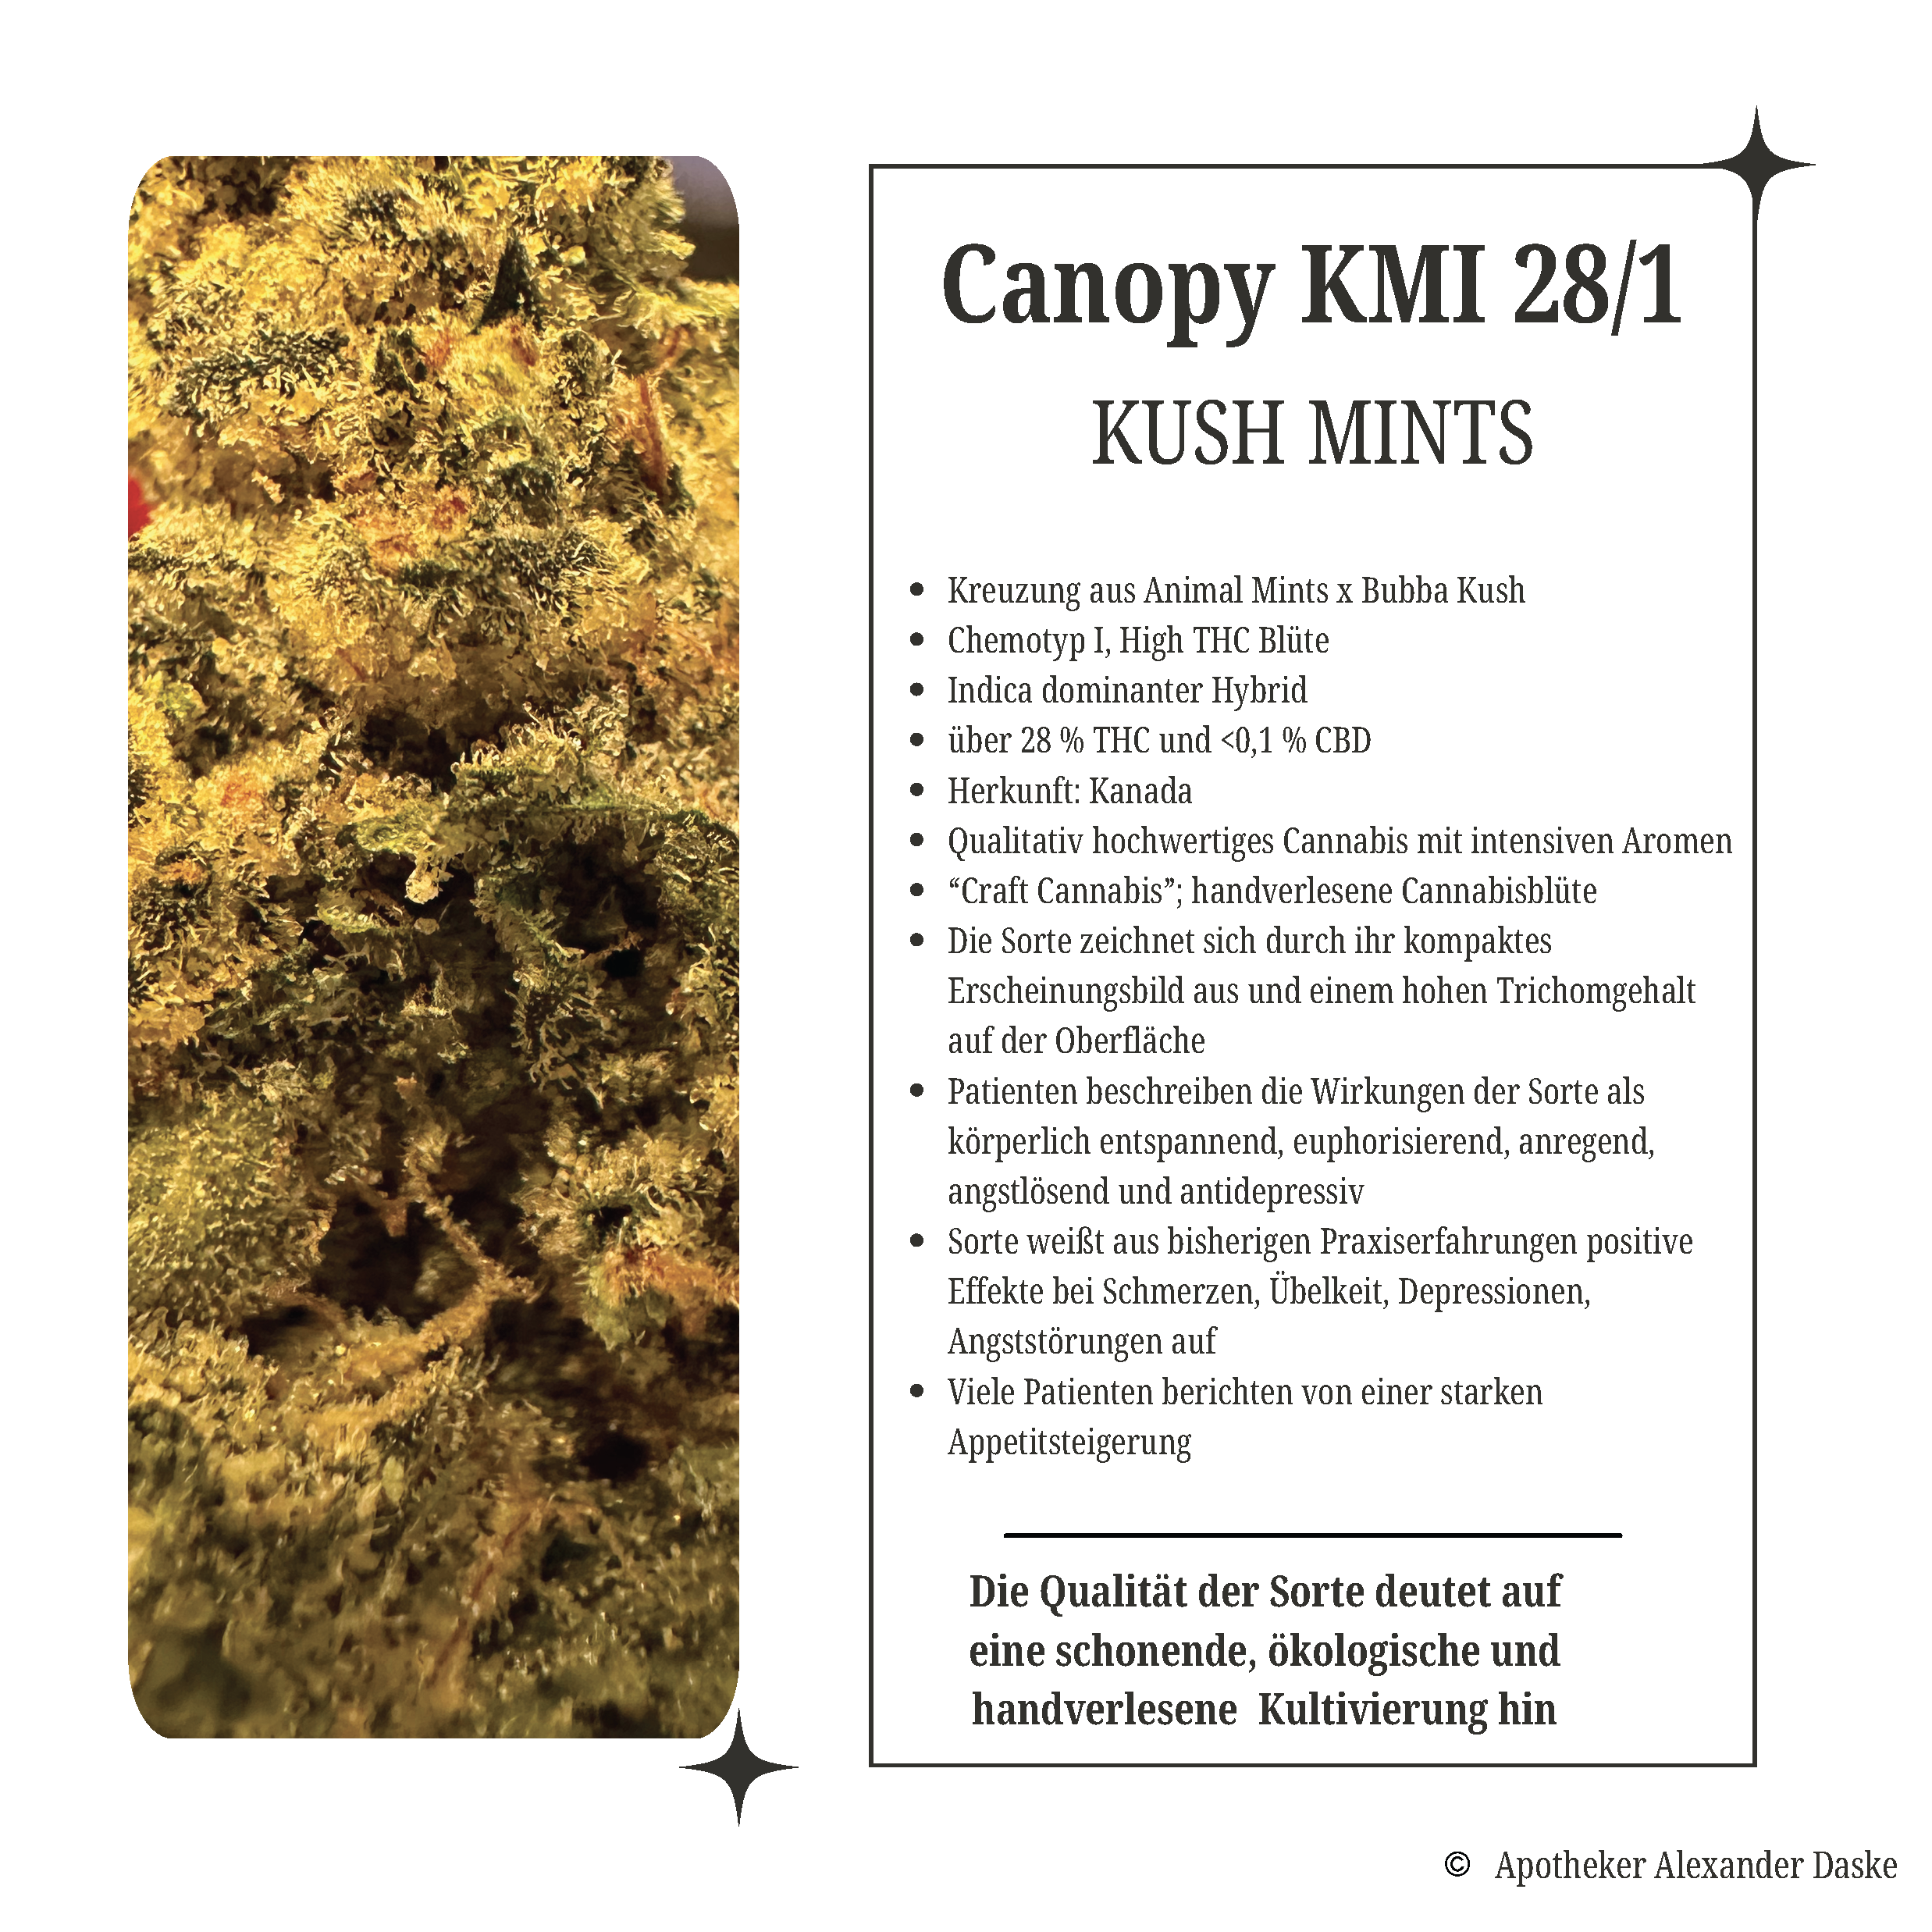 Canopy KMI 28/1 Kush Mints